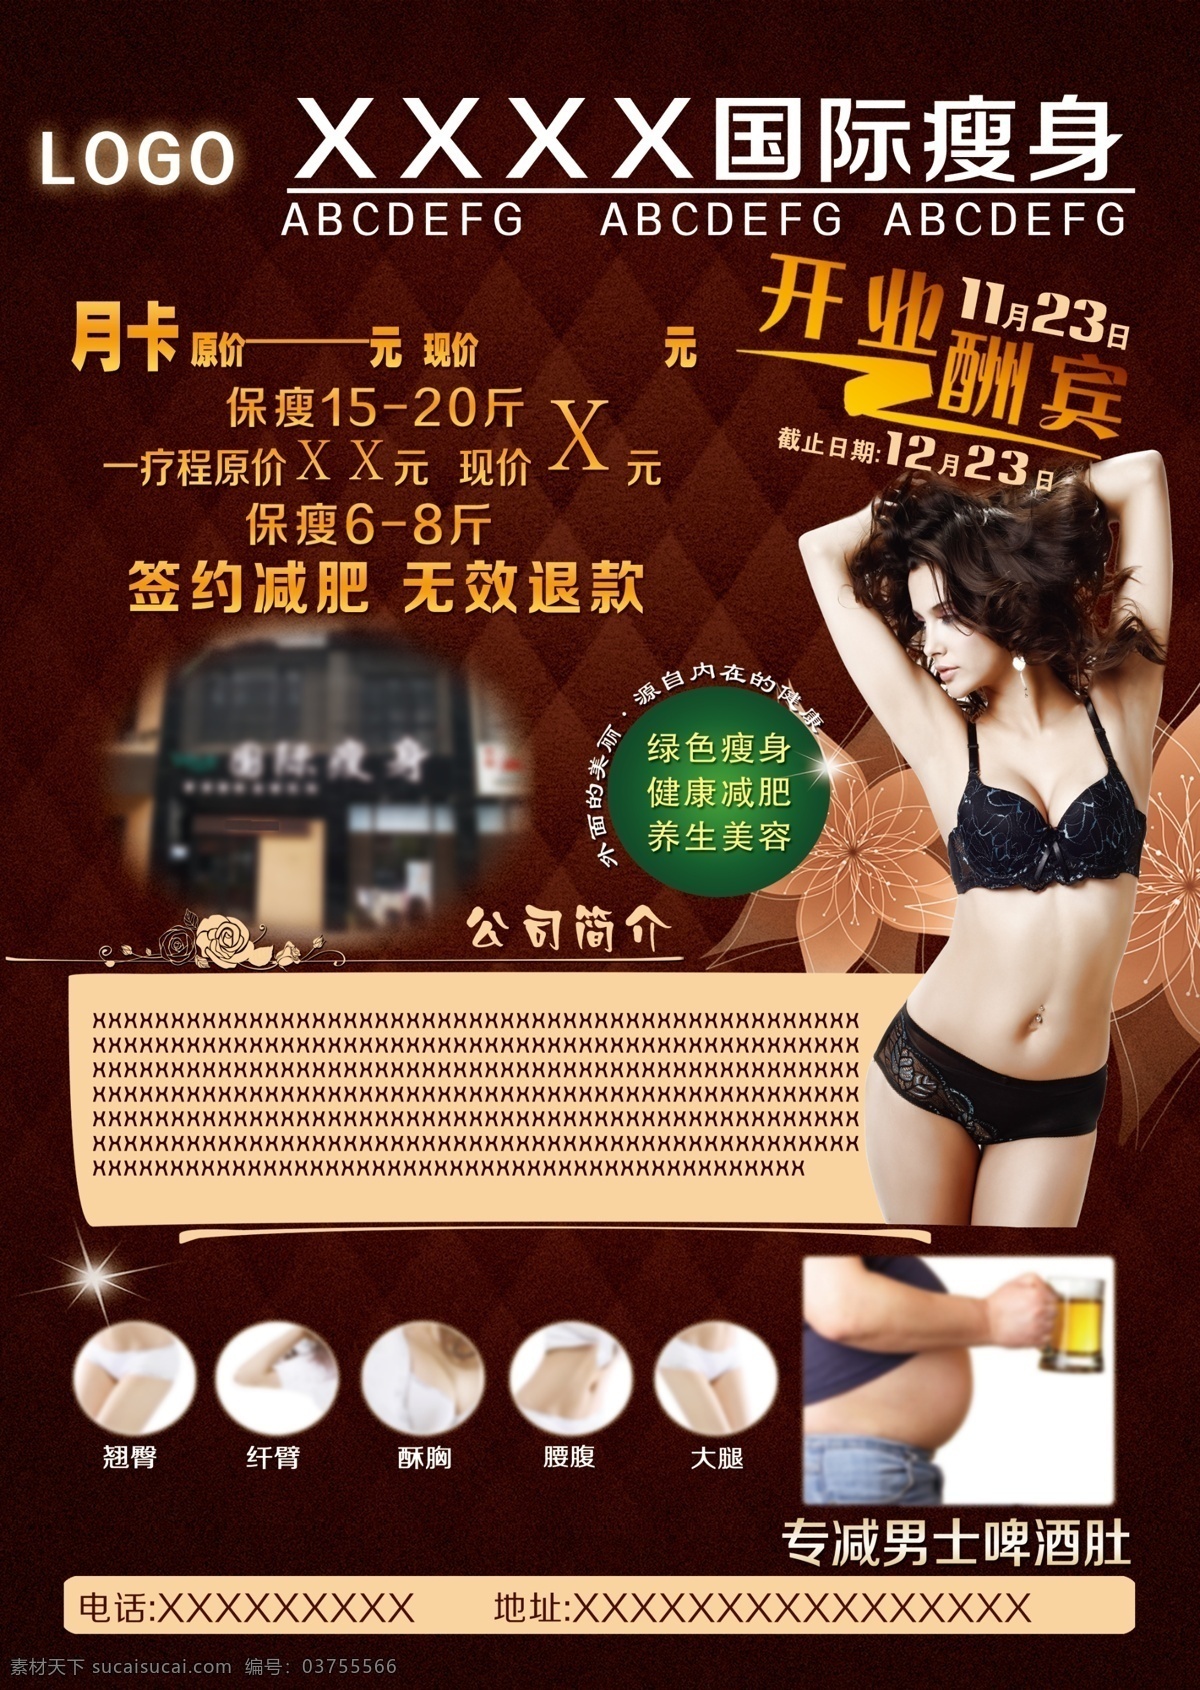 减肥传单 减肥 传单 美女 性感 瘦身 海报 宣传 褐色 花 底纹 黑色